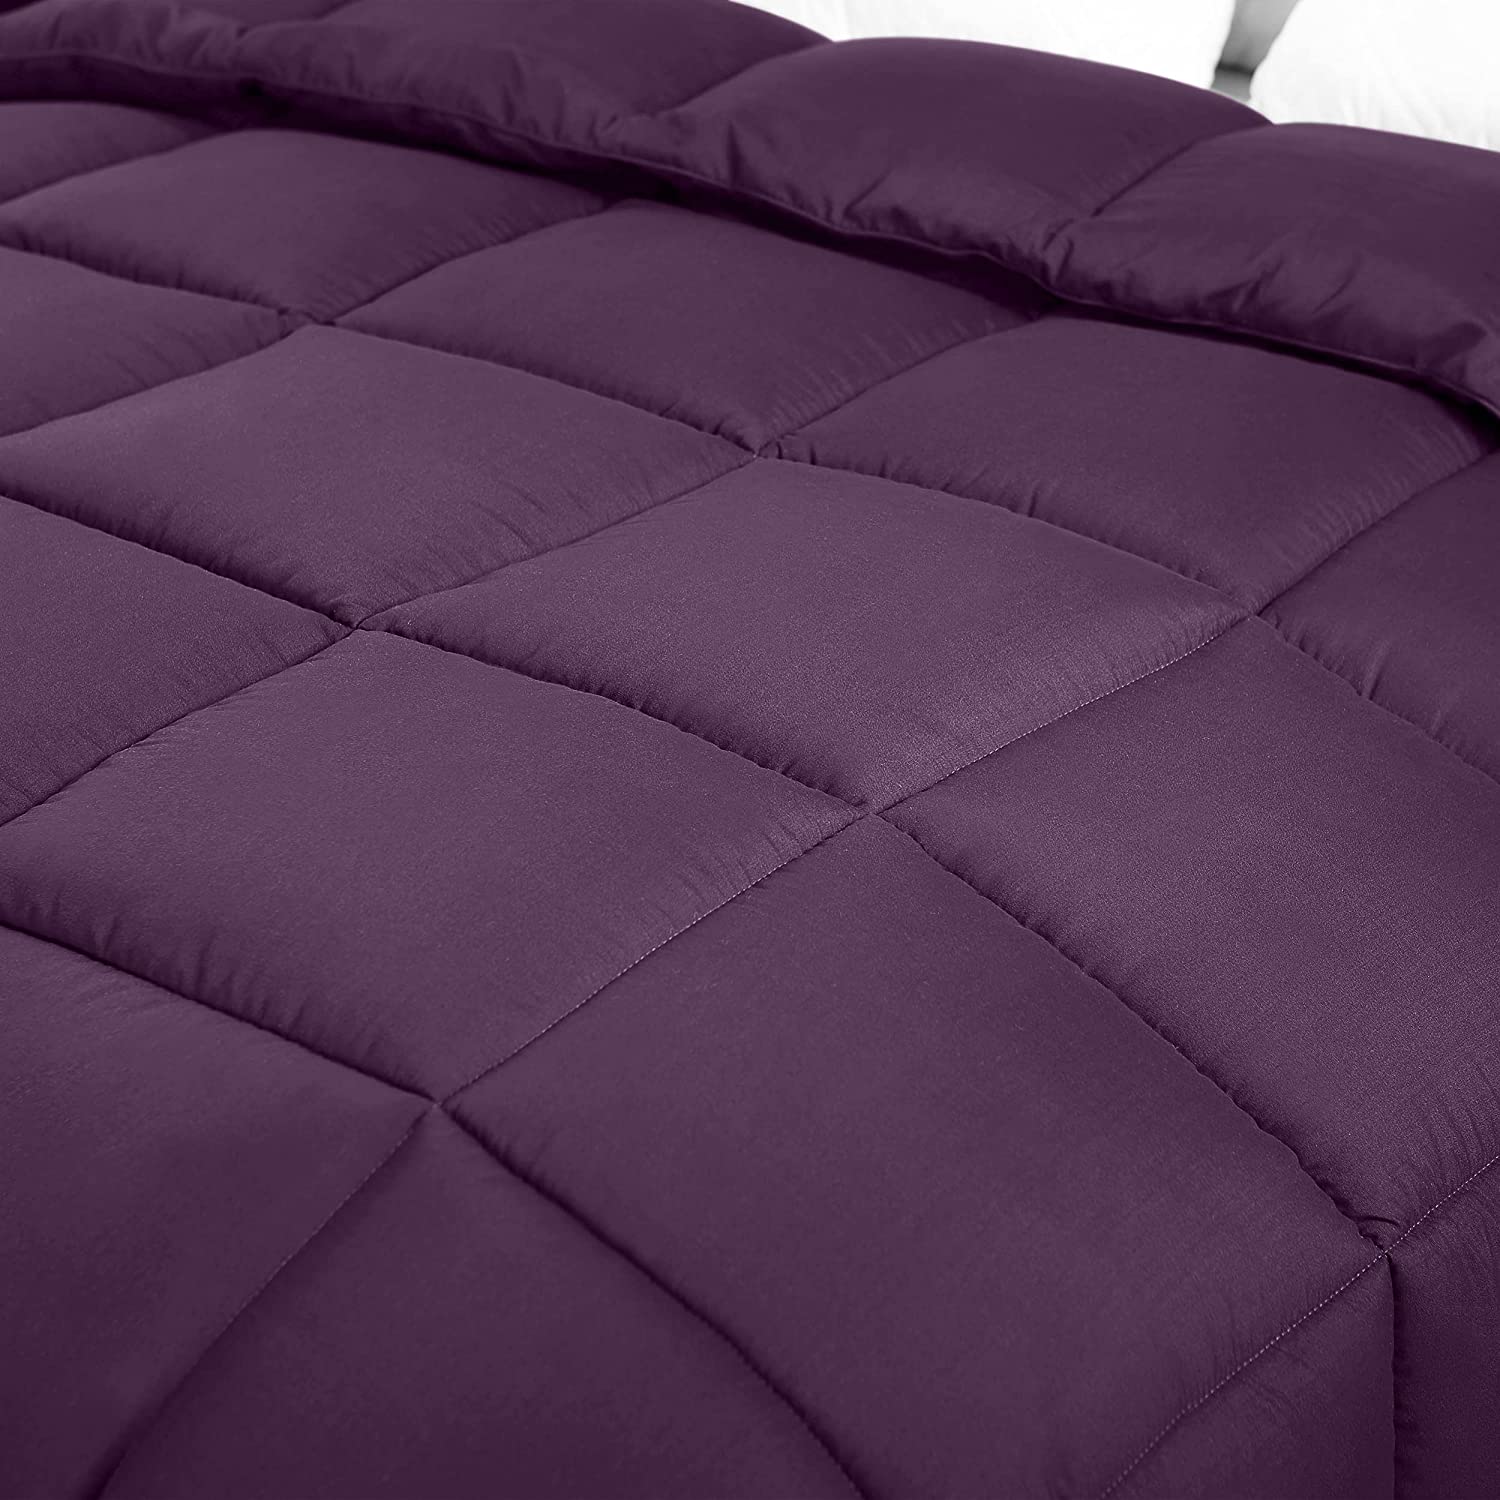 Should You Buy? Utopia Bedding All Season Comforter 